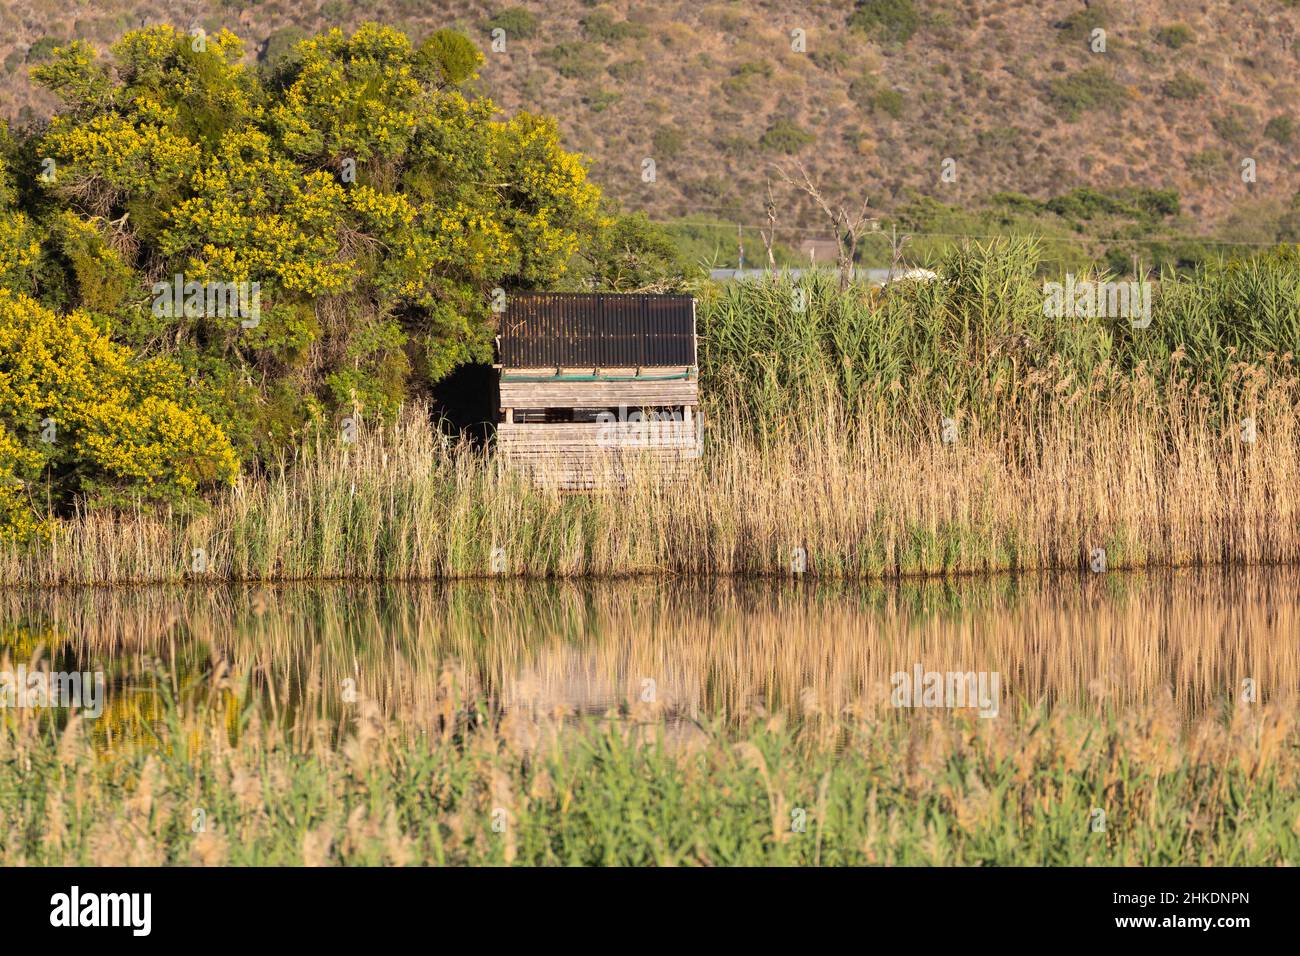 Una de las aves se esconde en la reserva natural Vrolijkheid cerca de McGregor, Cabo Occidental, Sudáfrica Foto de stock